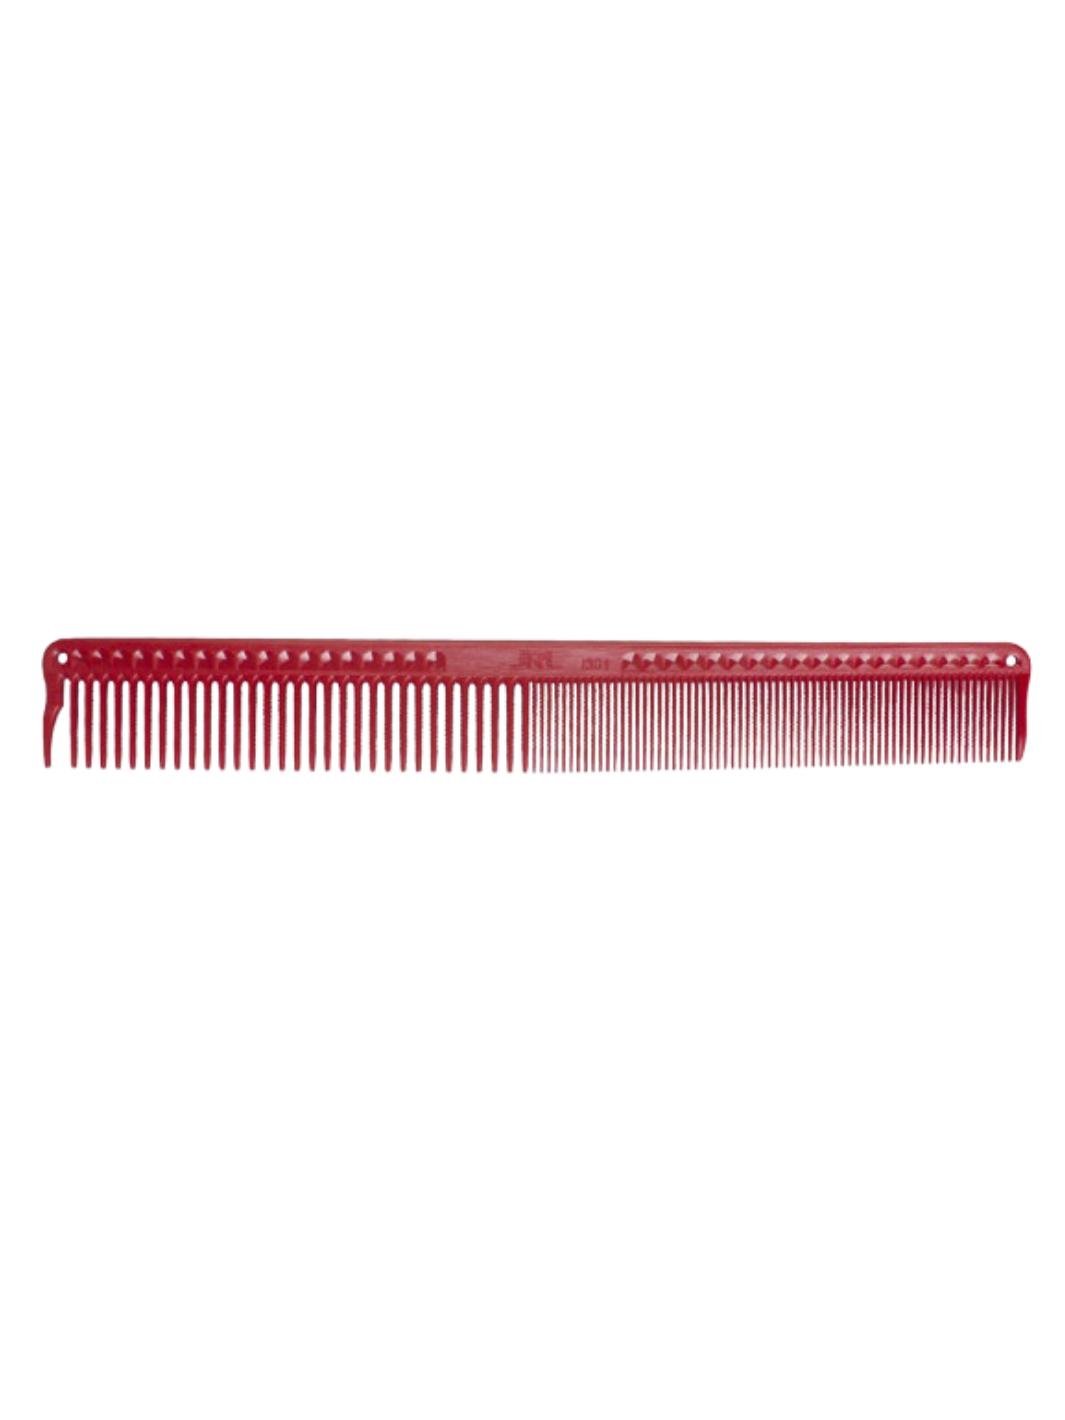 Roter JRL Schneidekamm 7 Zoll mit präzisen Zähnen, verfügbar bei Phullcutz für professionelles Hairstyling.